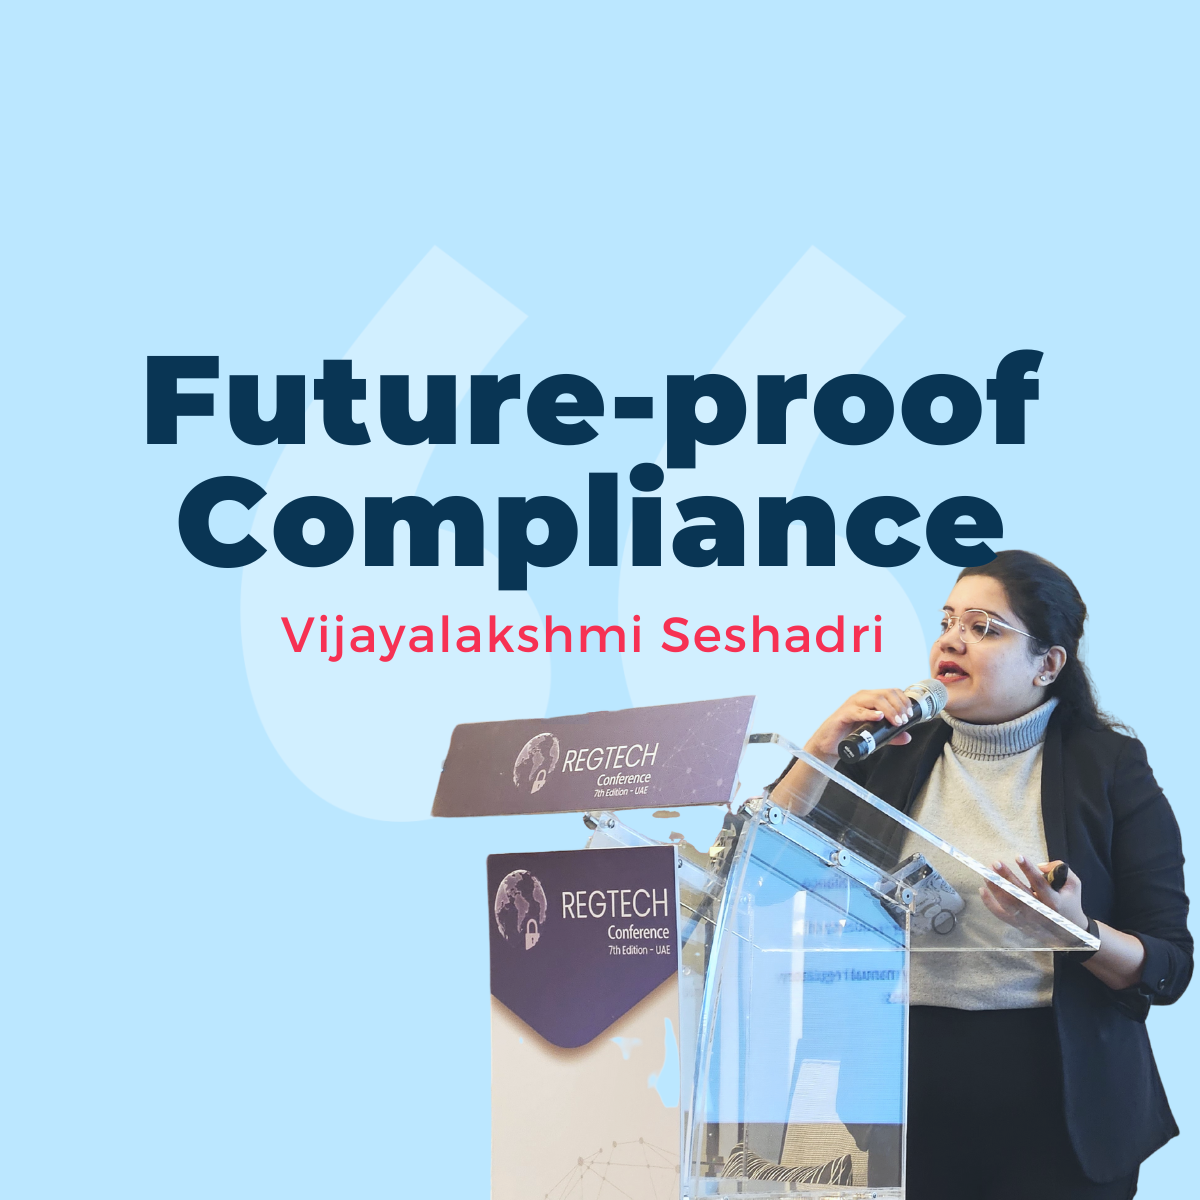 Future-proof compliance technology by Vijayalakshmi Seshadri